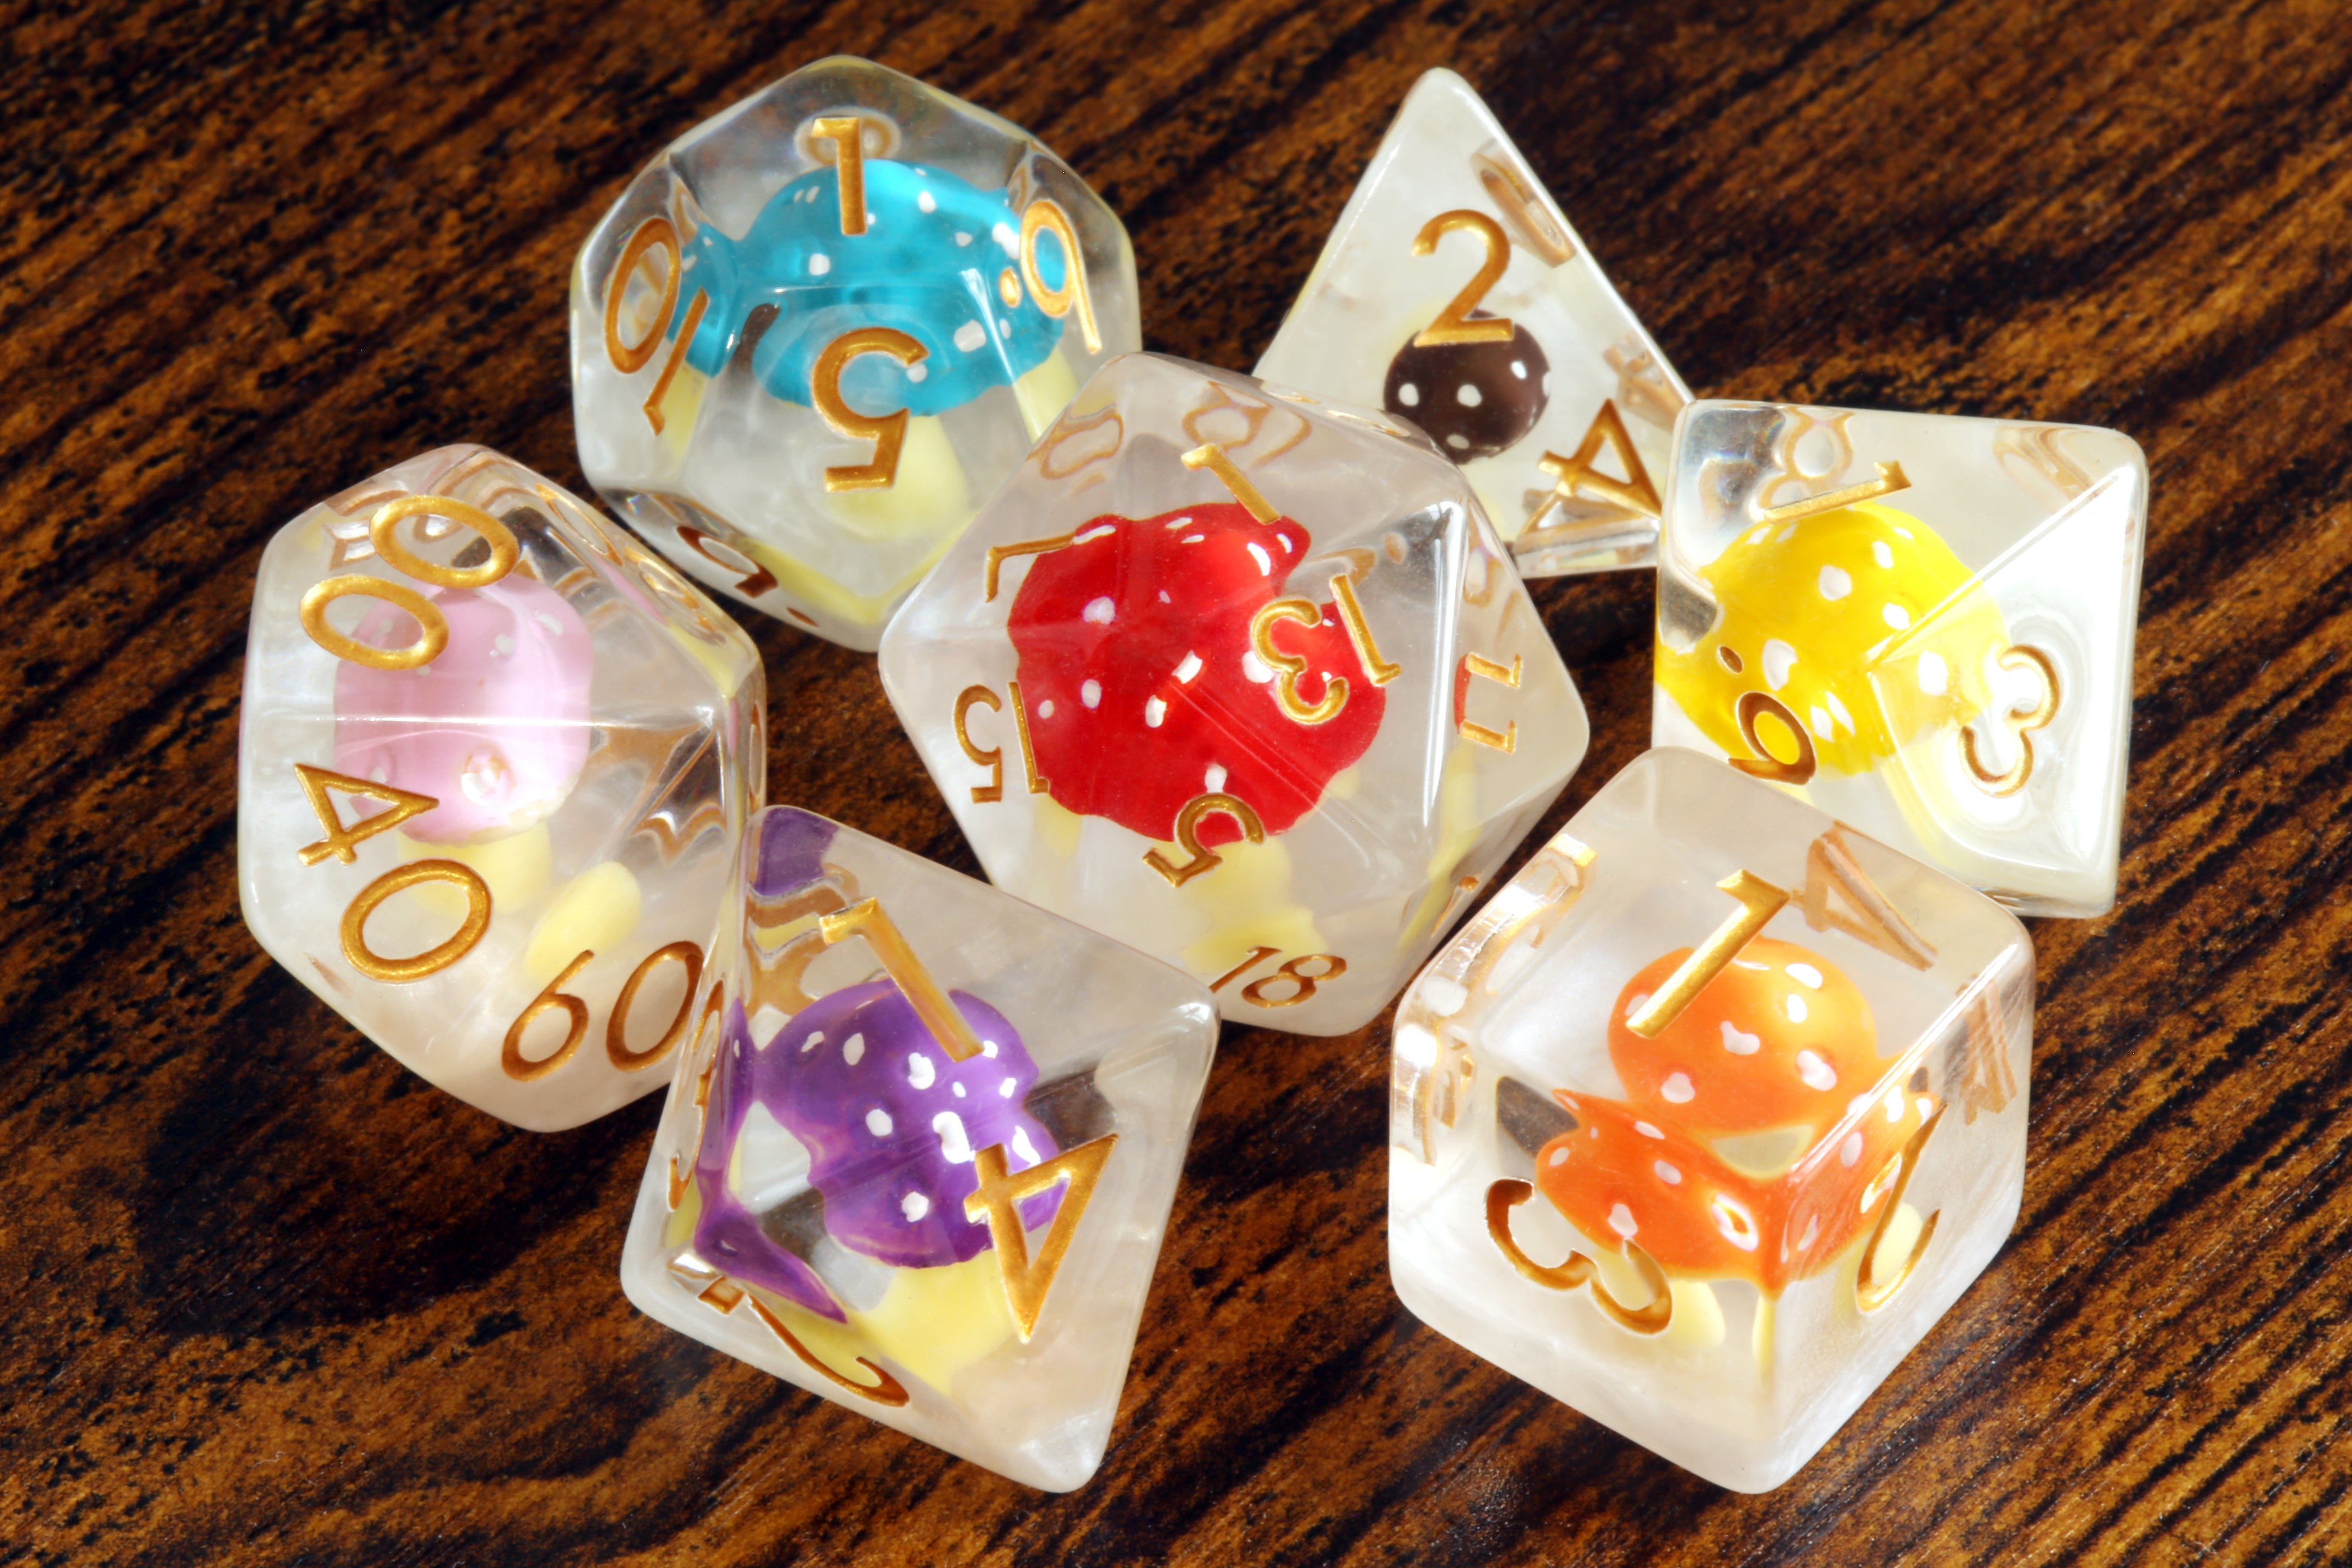 Rainbow Colorshroom dice set - Multicolor Mushroom dice - The Wizard's Vault